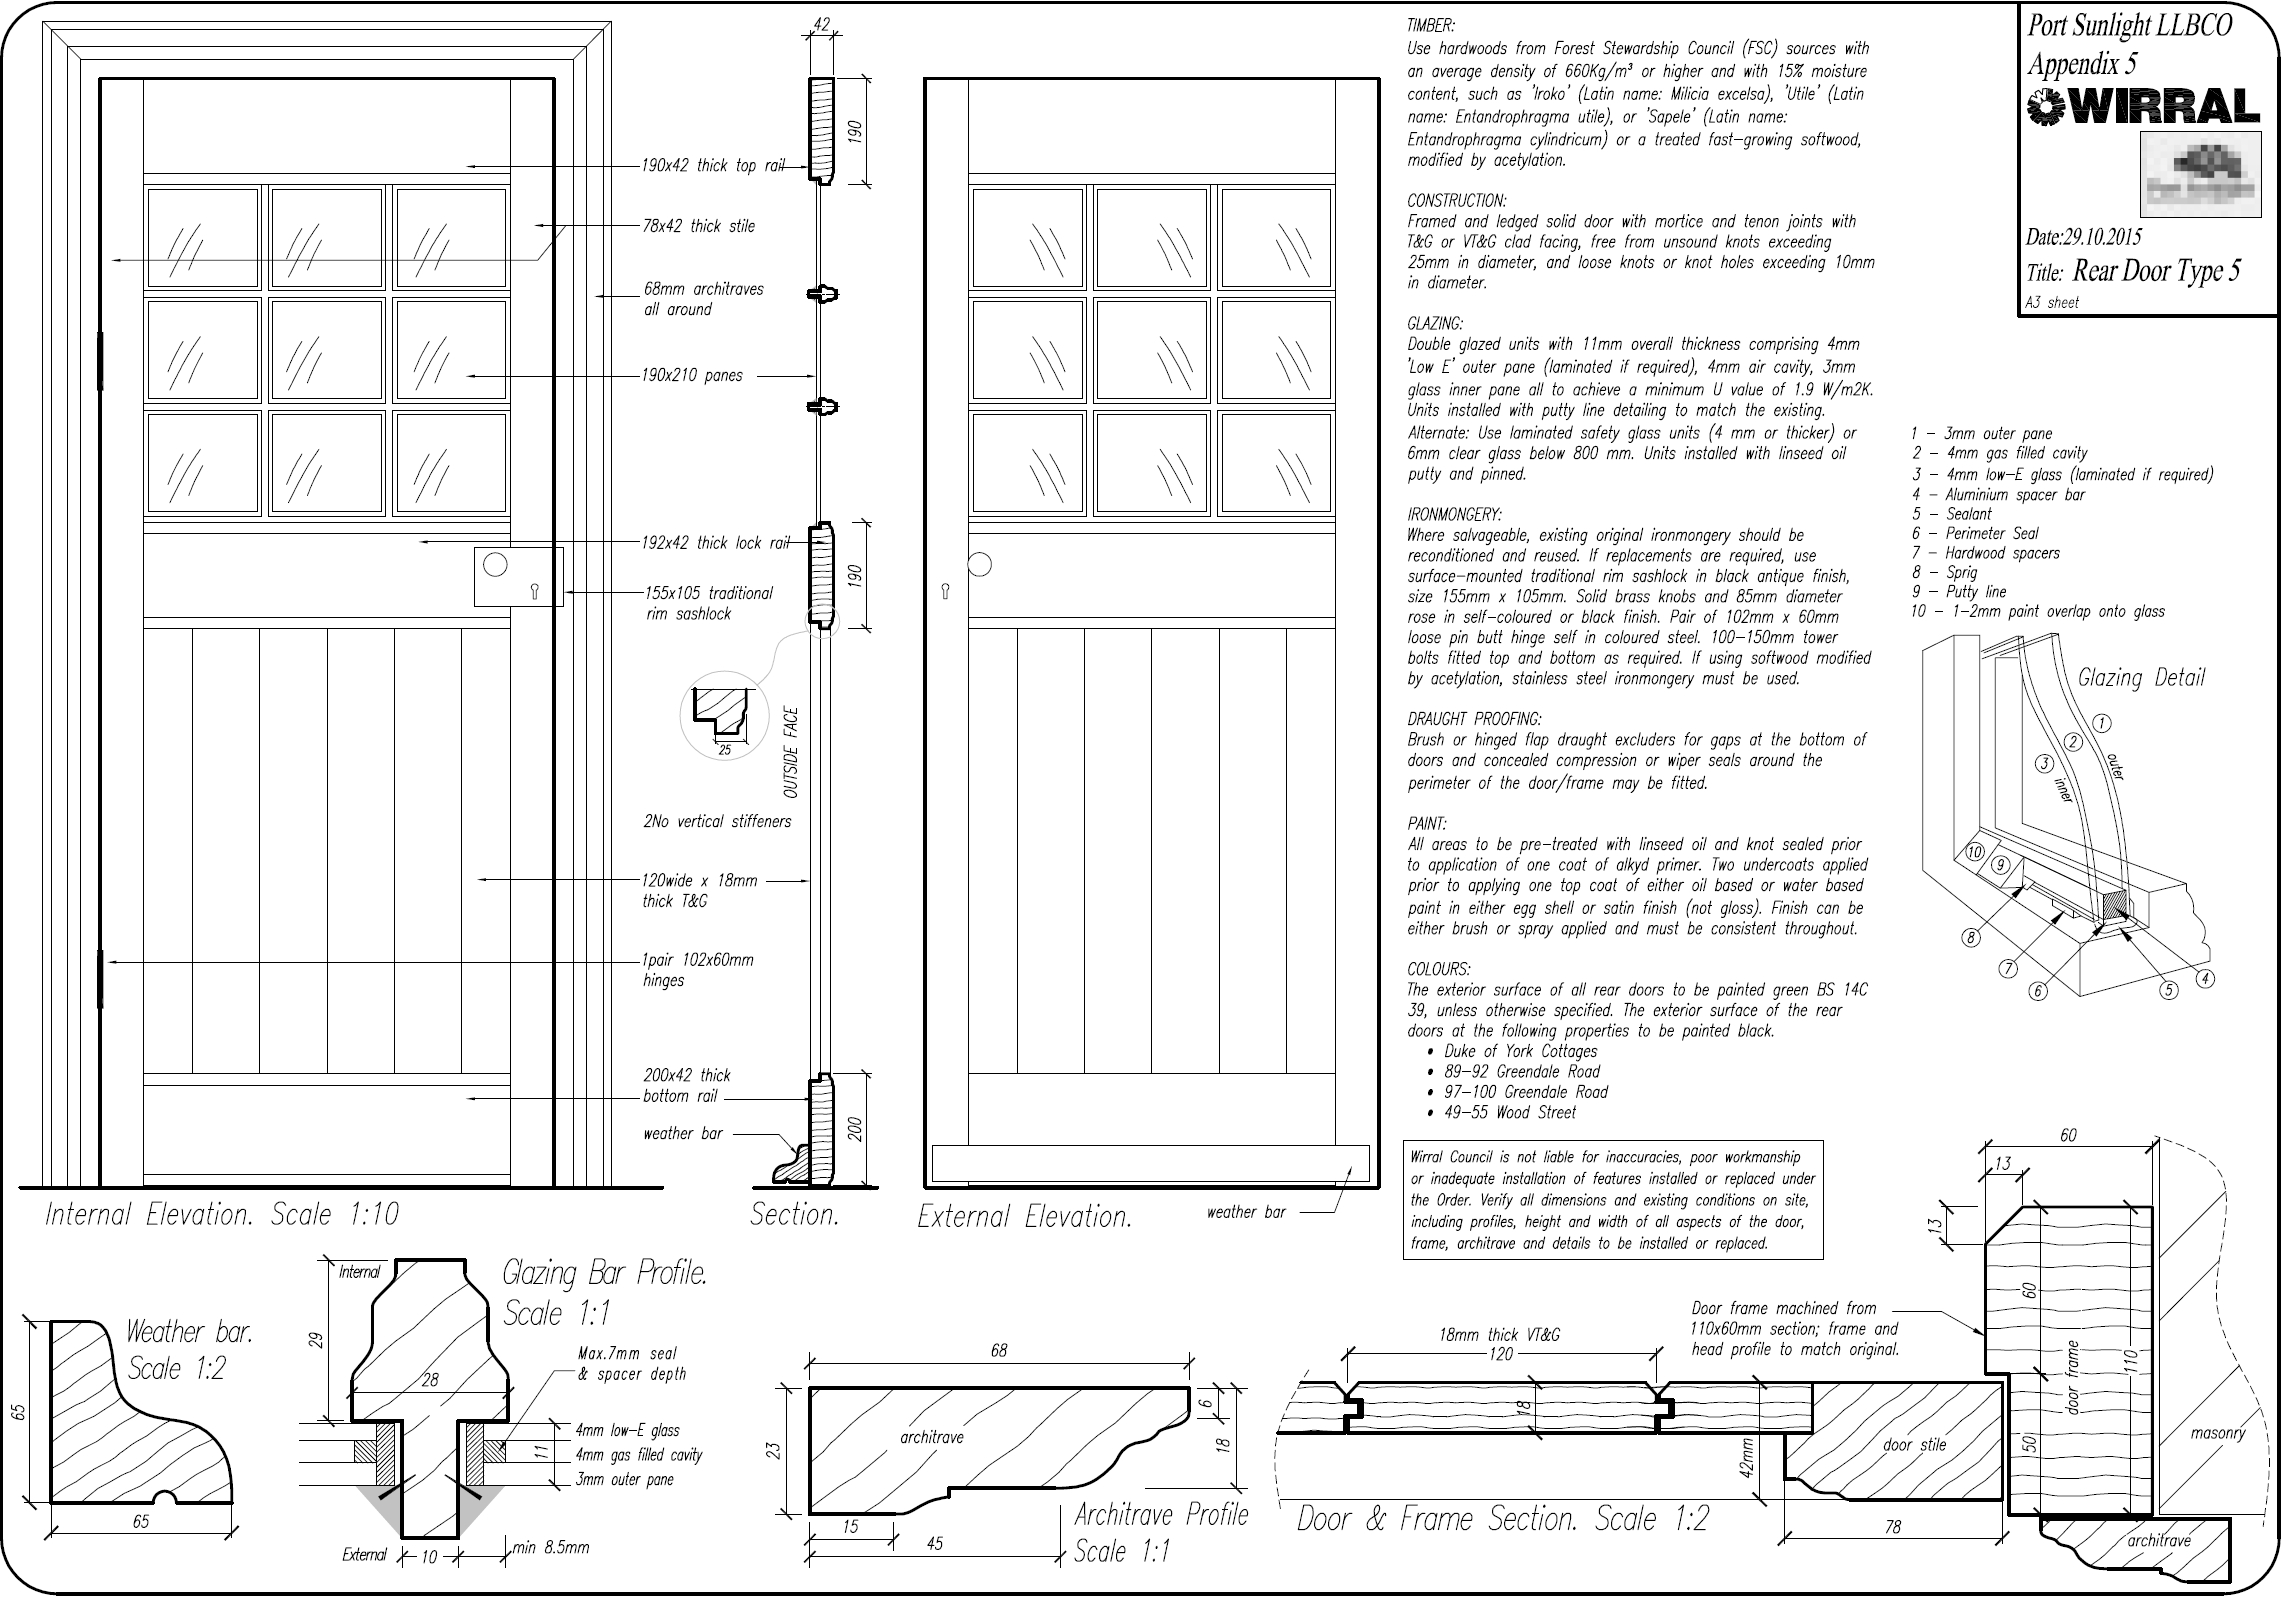 Port Sunlight door design.jpg